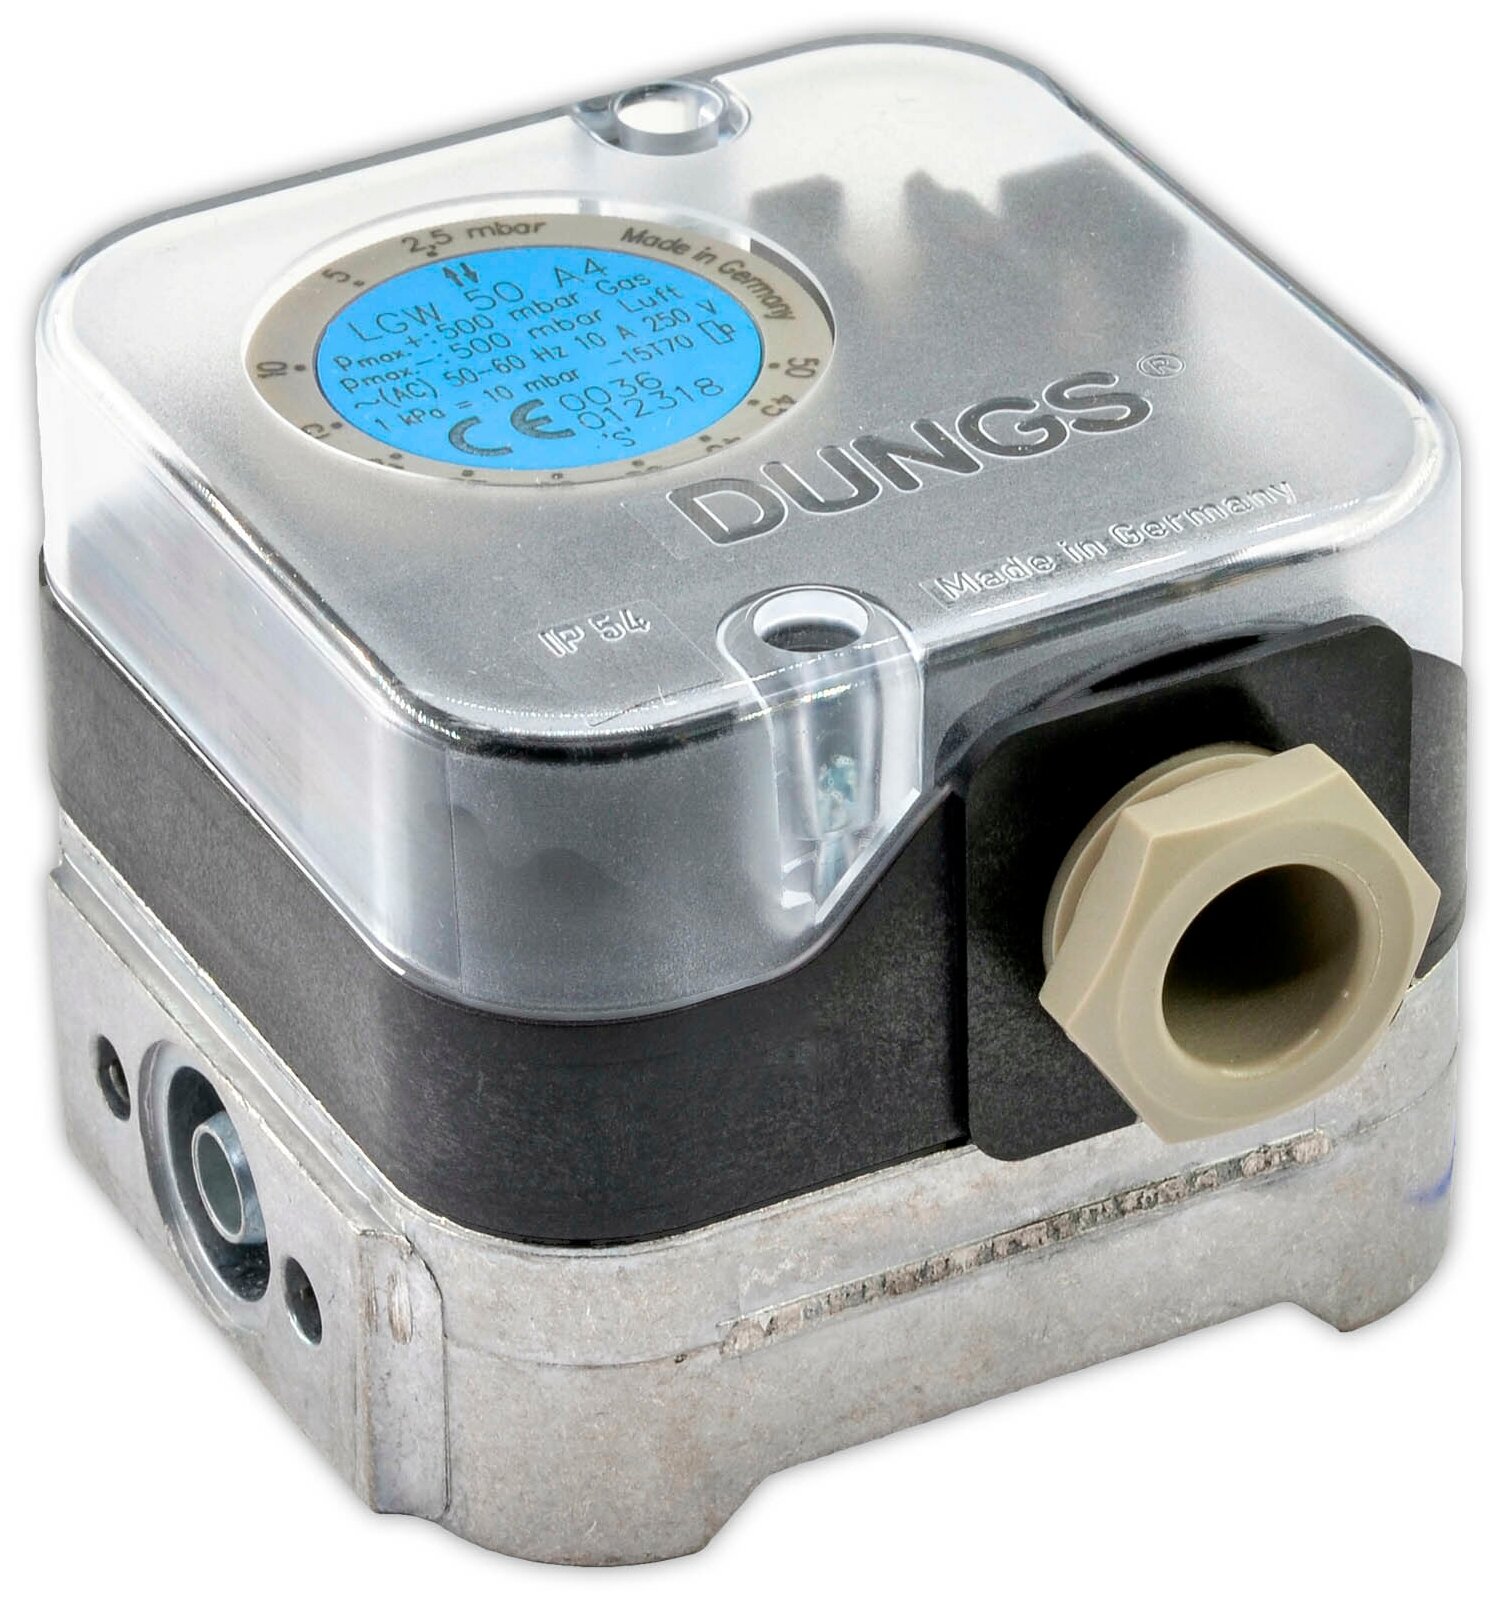 Дифференциальный датчик-реле давления для воздуха DUNGS LGW 50 A4 арт.221592,1/4" (р+) 1/8" (р-), Pmax 500 mBar,2,5-50mbar